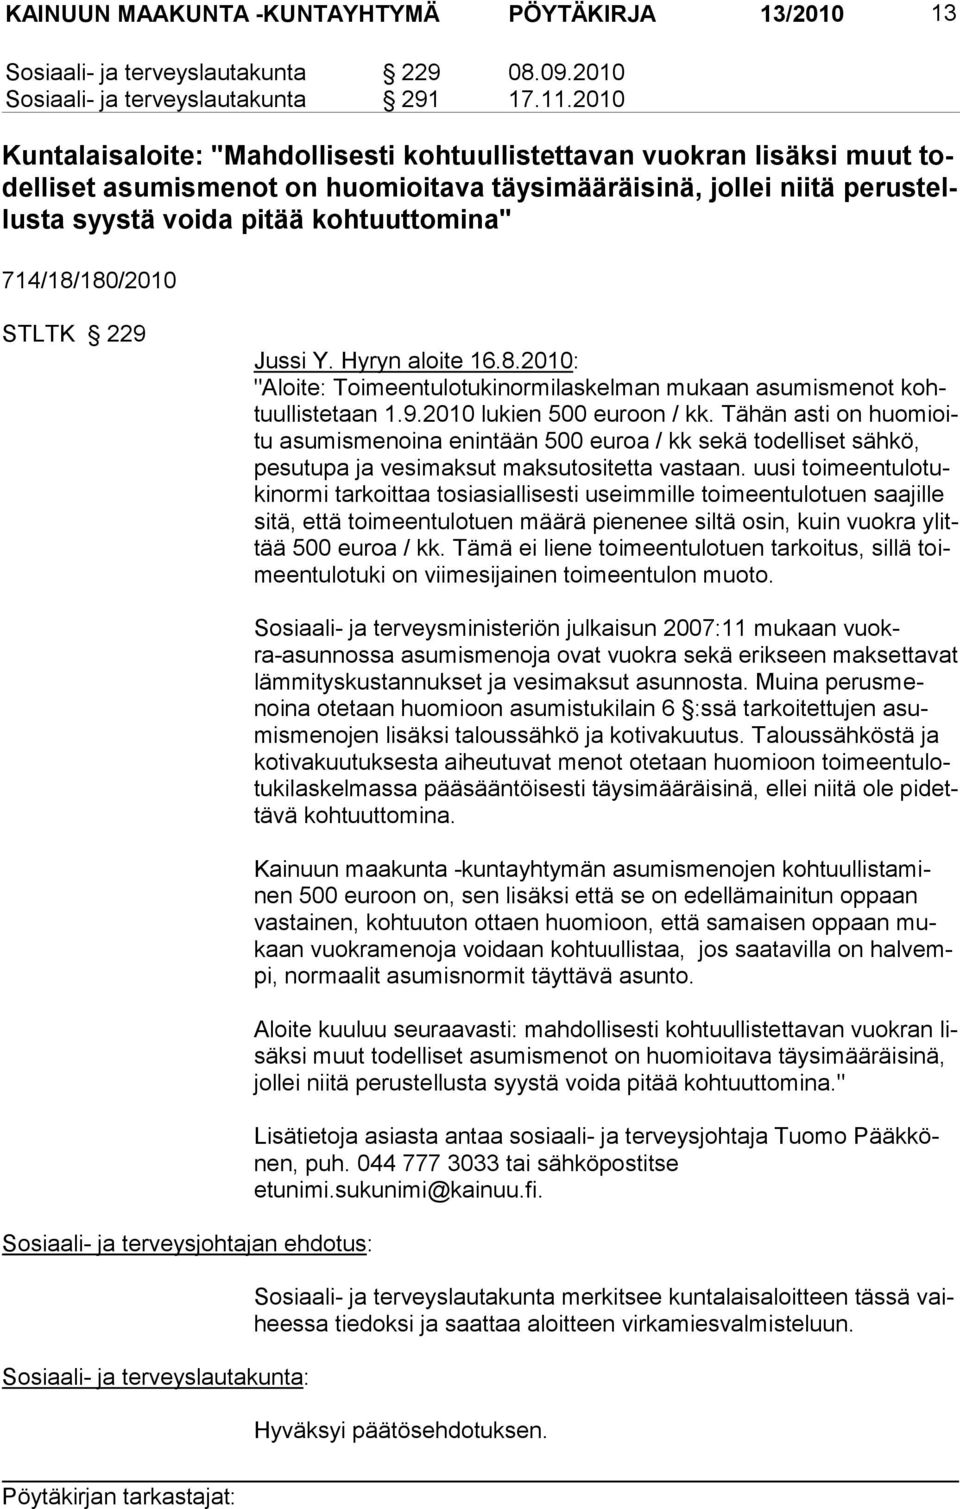 714/18/180/2010 STLTK 229 Jussi Y. Hyryn aloite 16.8.2010: "Aloite: Toimeentulotukinormilaskelman mu kaan asumismenot kohtuullistetaan 1.9.2010 lu kien 500 euroon / kk.